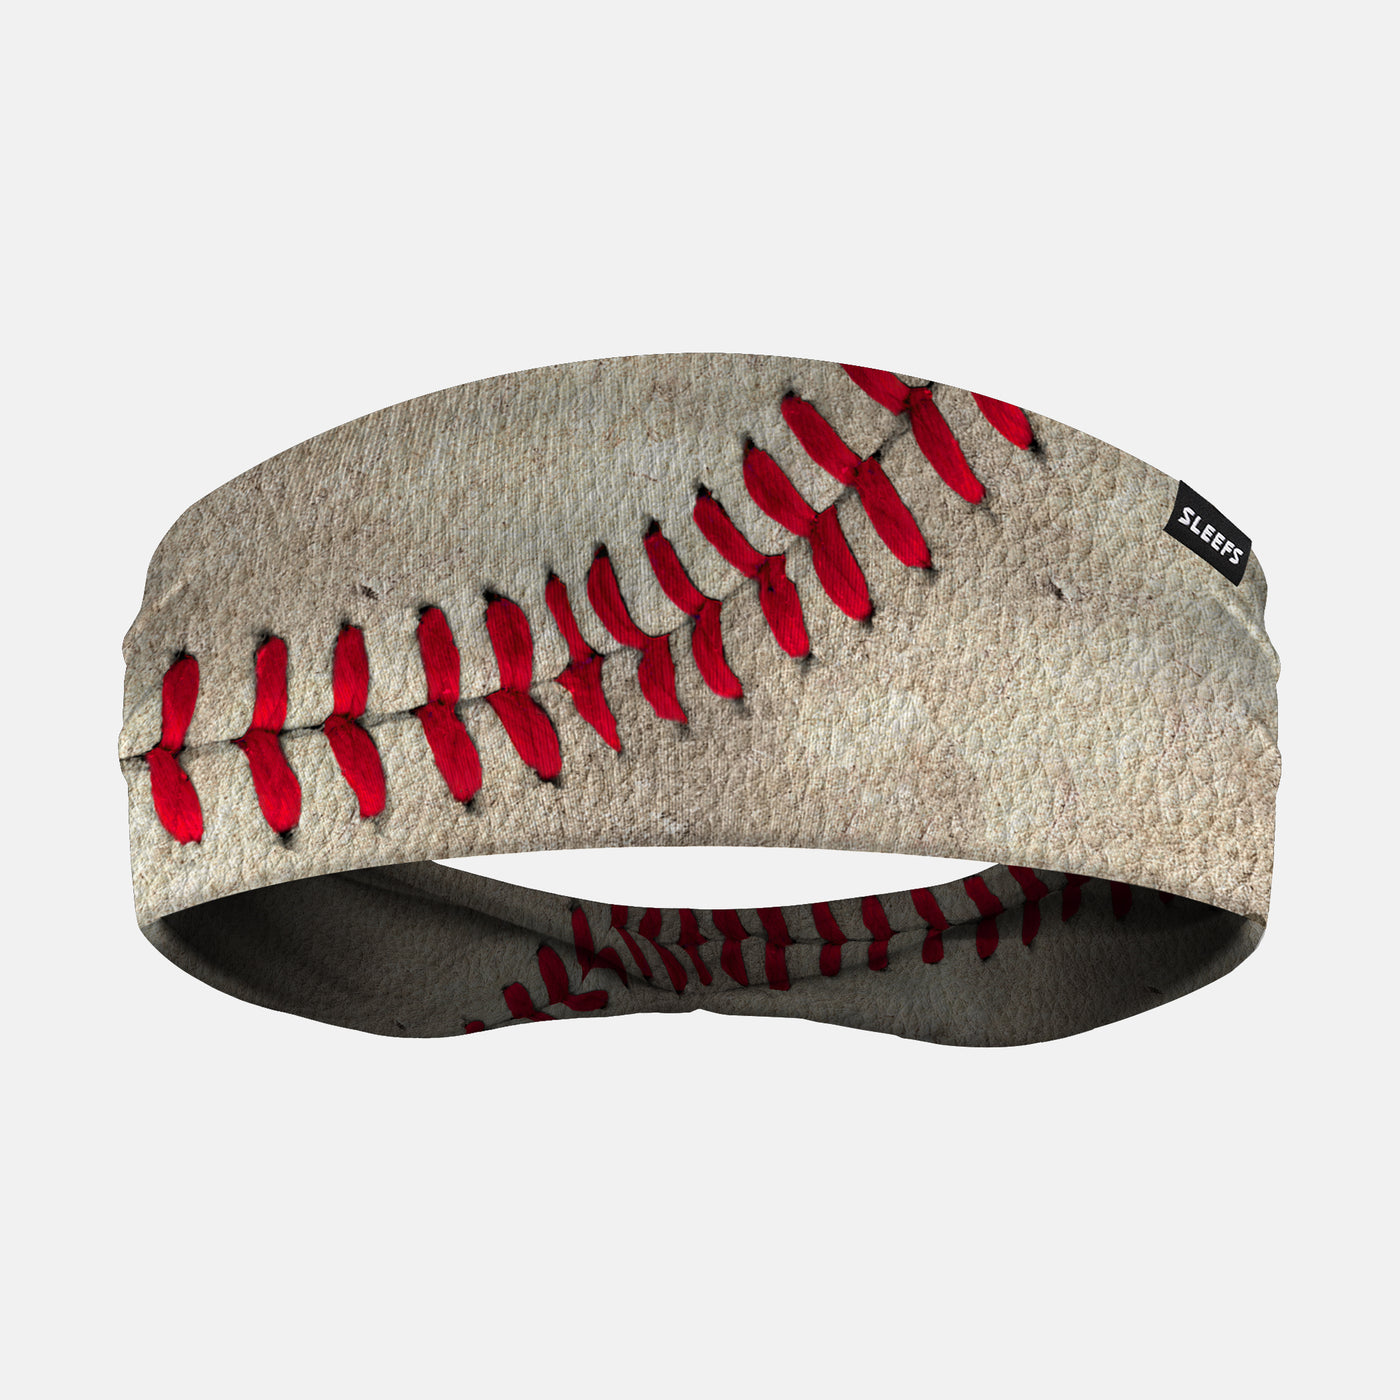 Old Baseball Headband